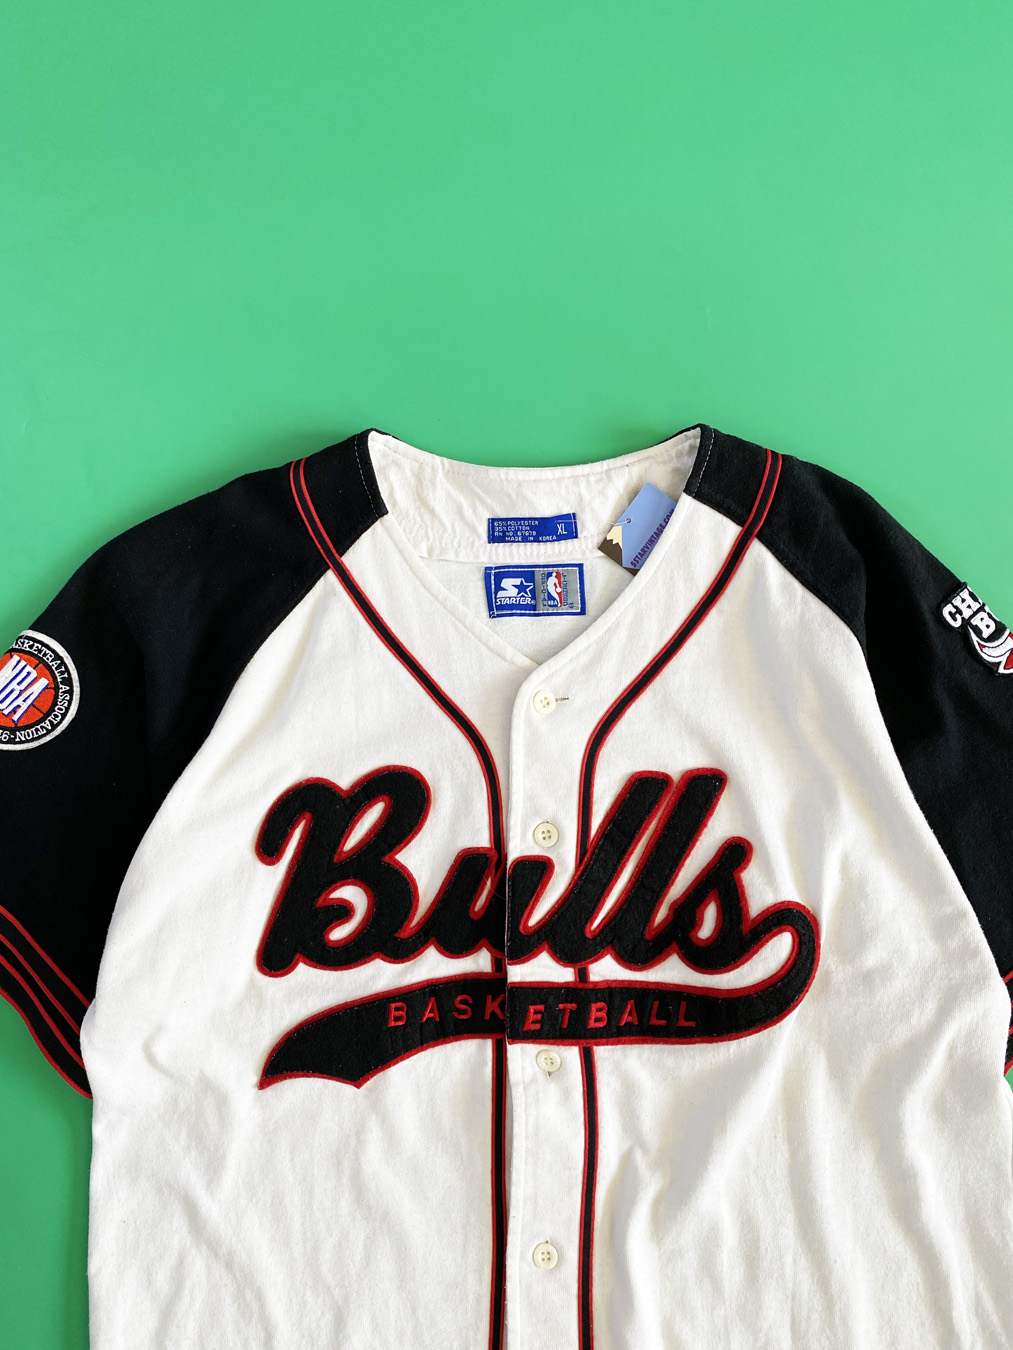 Vintage Bulls Baseball Starter Jersey 